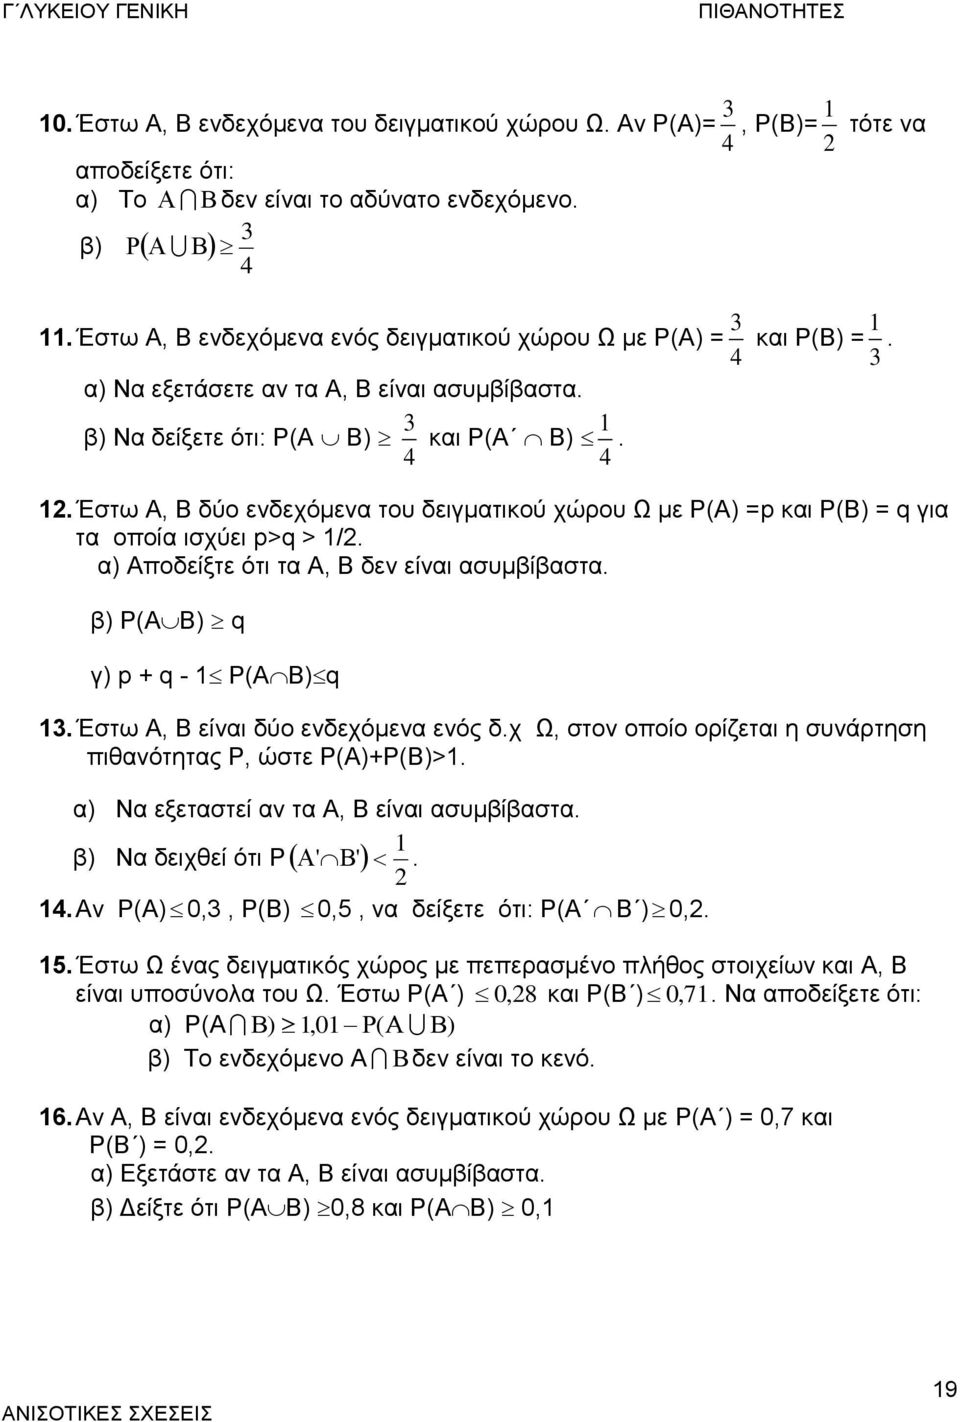 . Έστω Α, Β δύο ενδεχόμενα του δειγματικού χώρου Ω με Ρ(Α) =p και Ρ(Β) = q για τα οποία ισχύει p>q > /. α) Αποδείξτε ότι τα Α, Β δεν είναι ασυμβίβαστα. β) Ρ(AB) q γ) p + q - Ρ(AB)q.